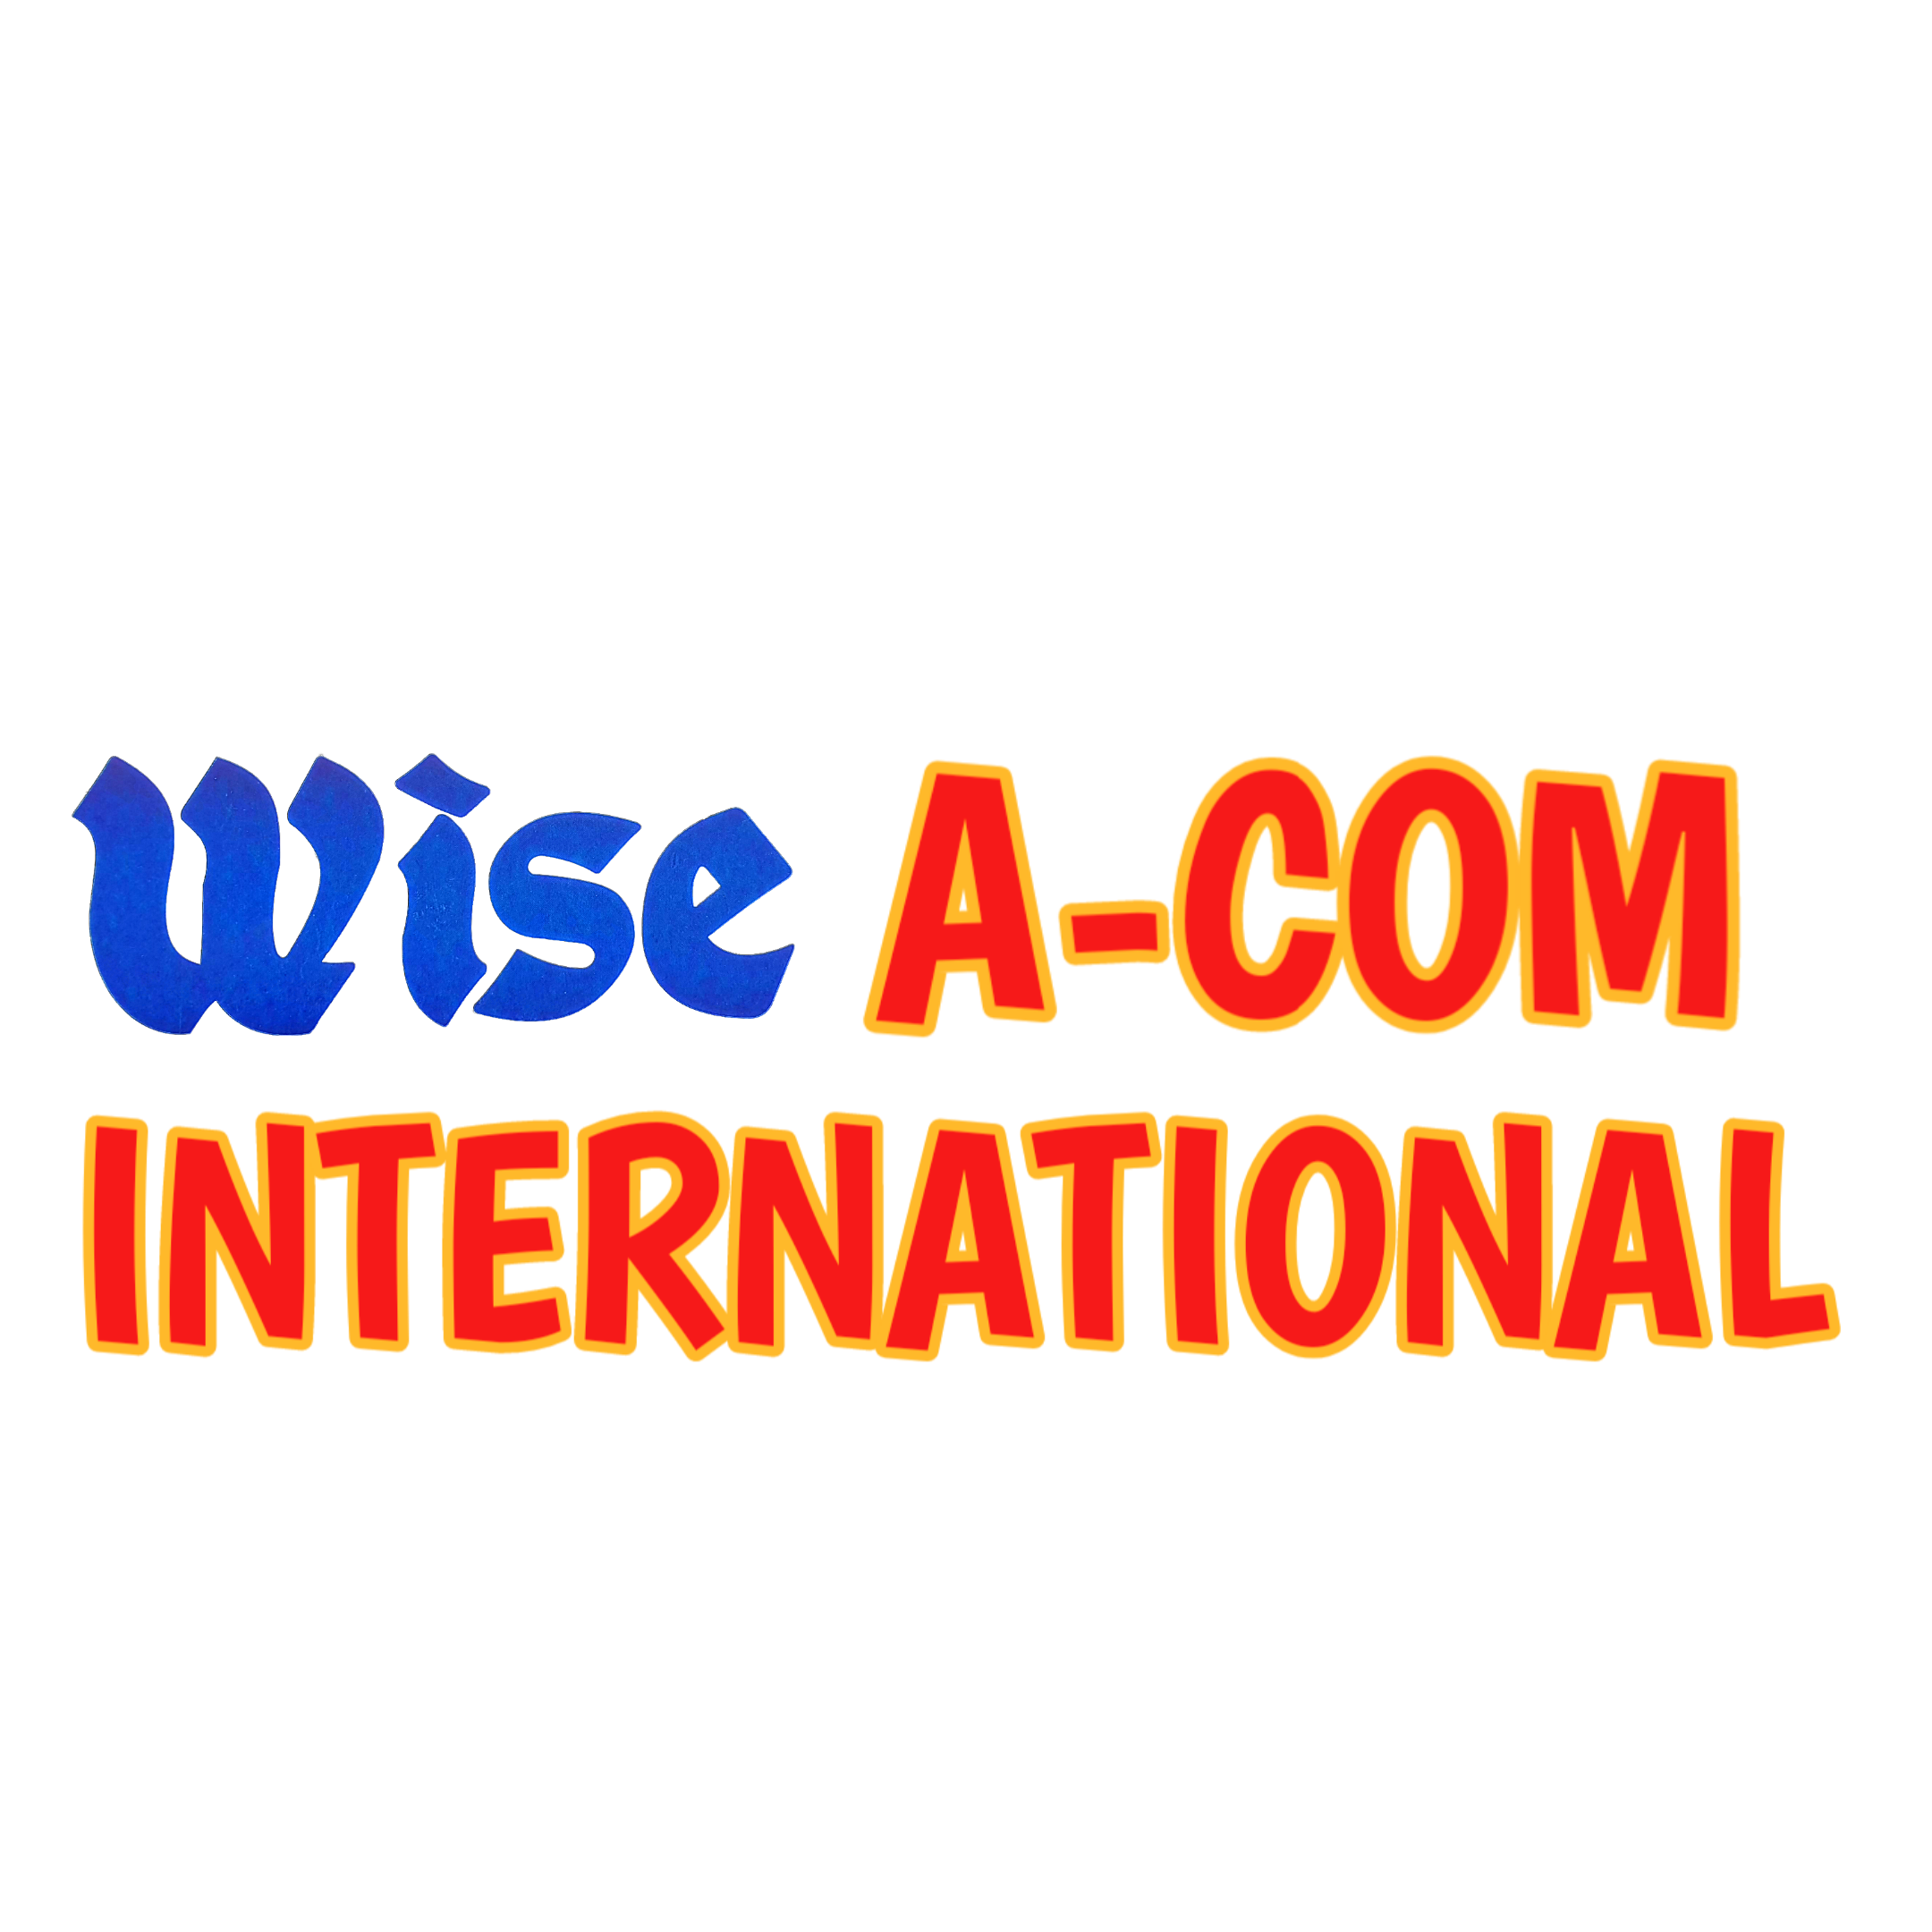 A-COM International